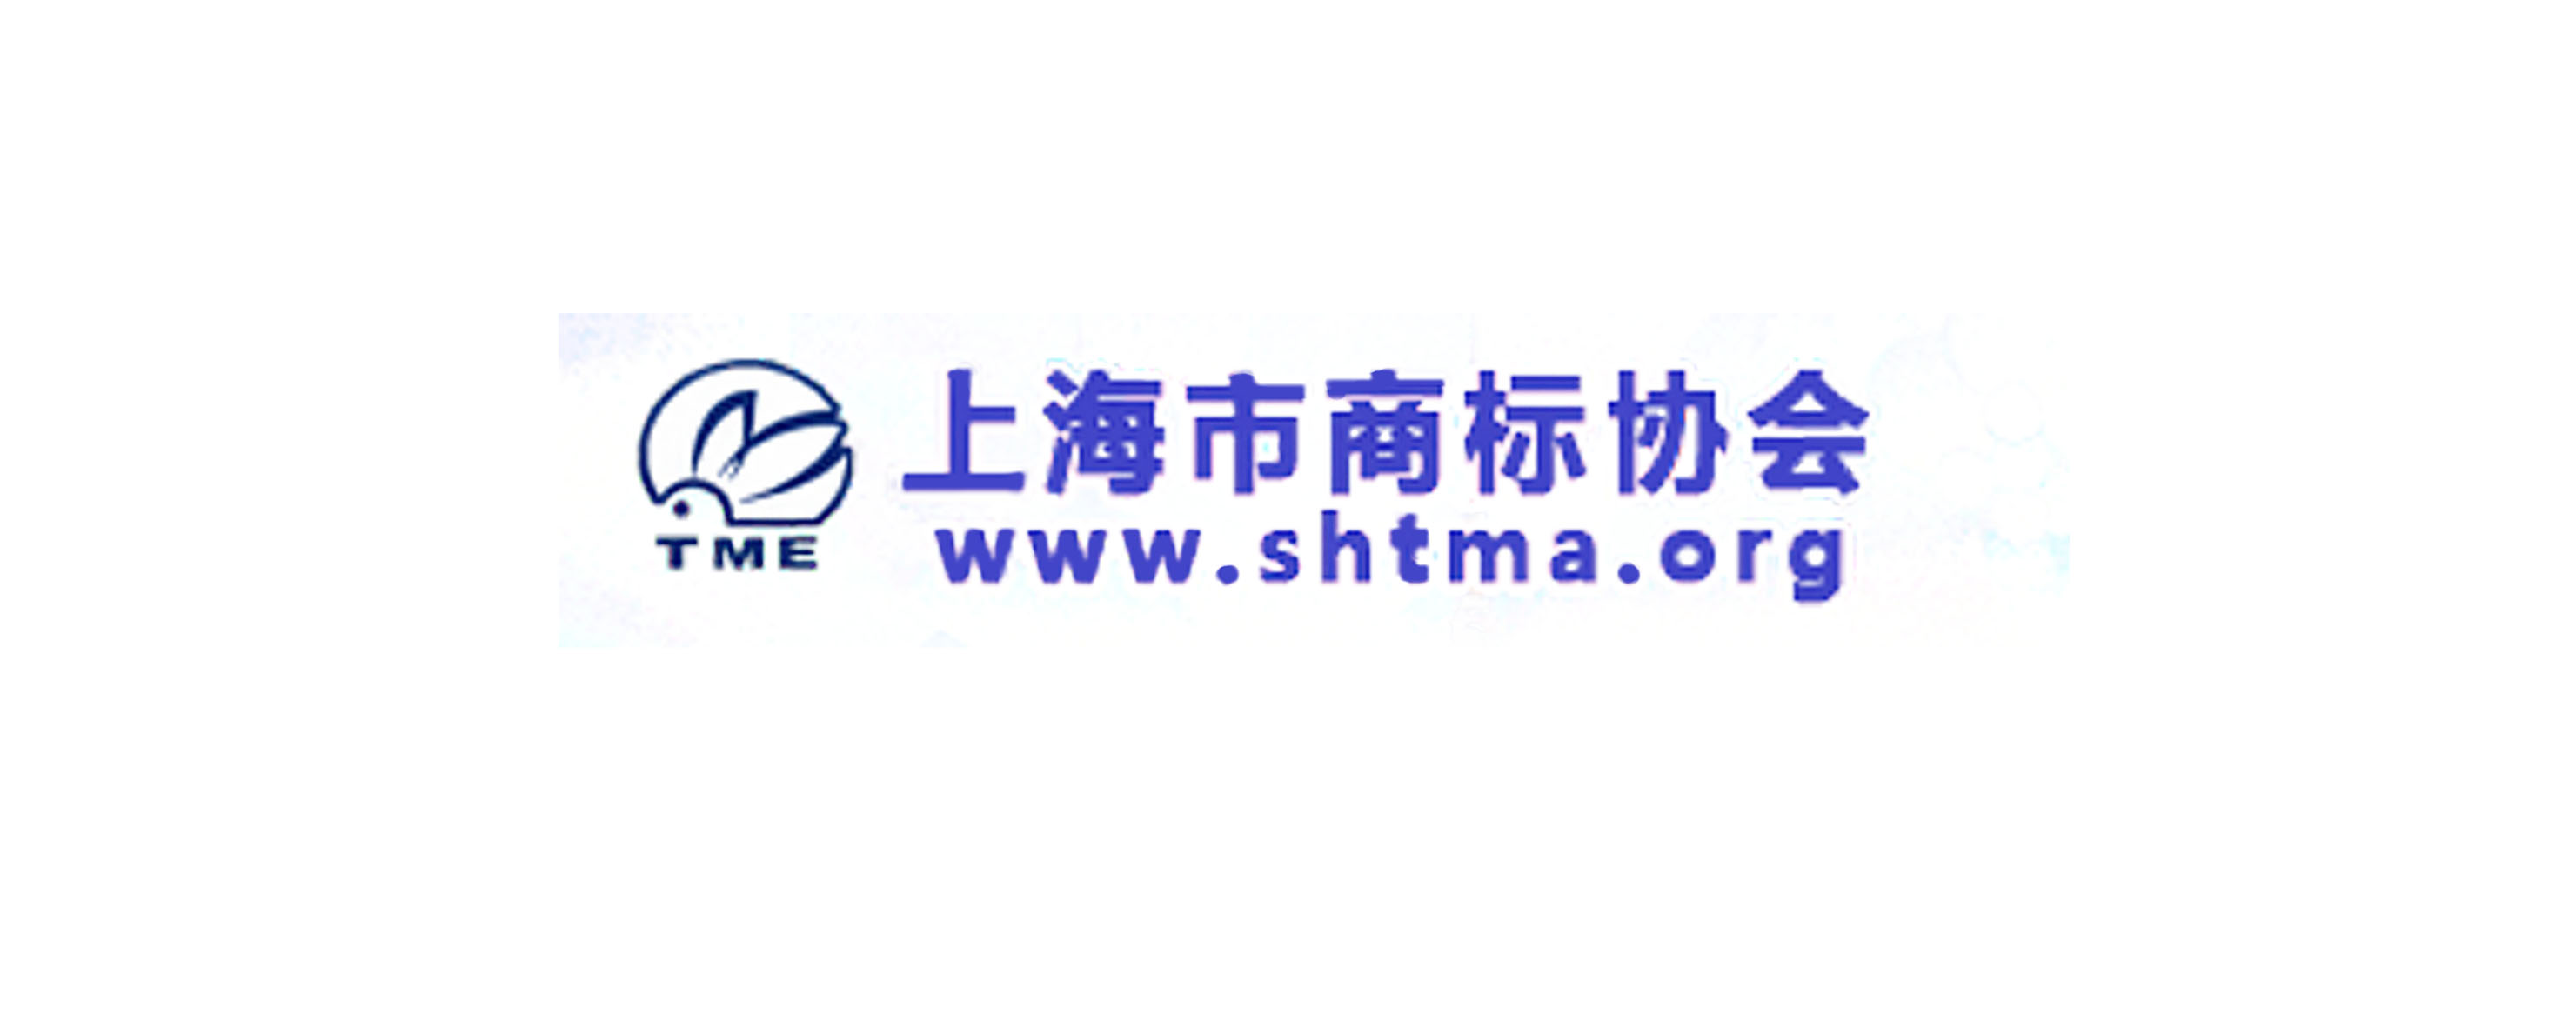 上海市商标协会